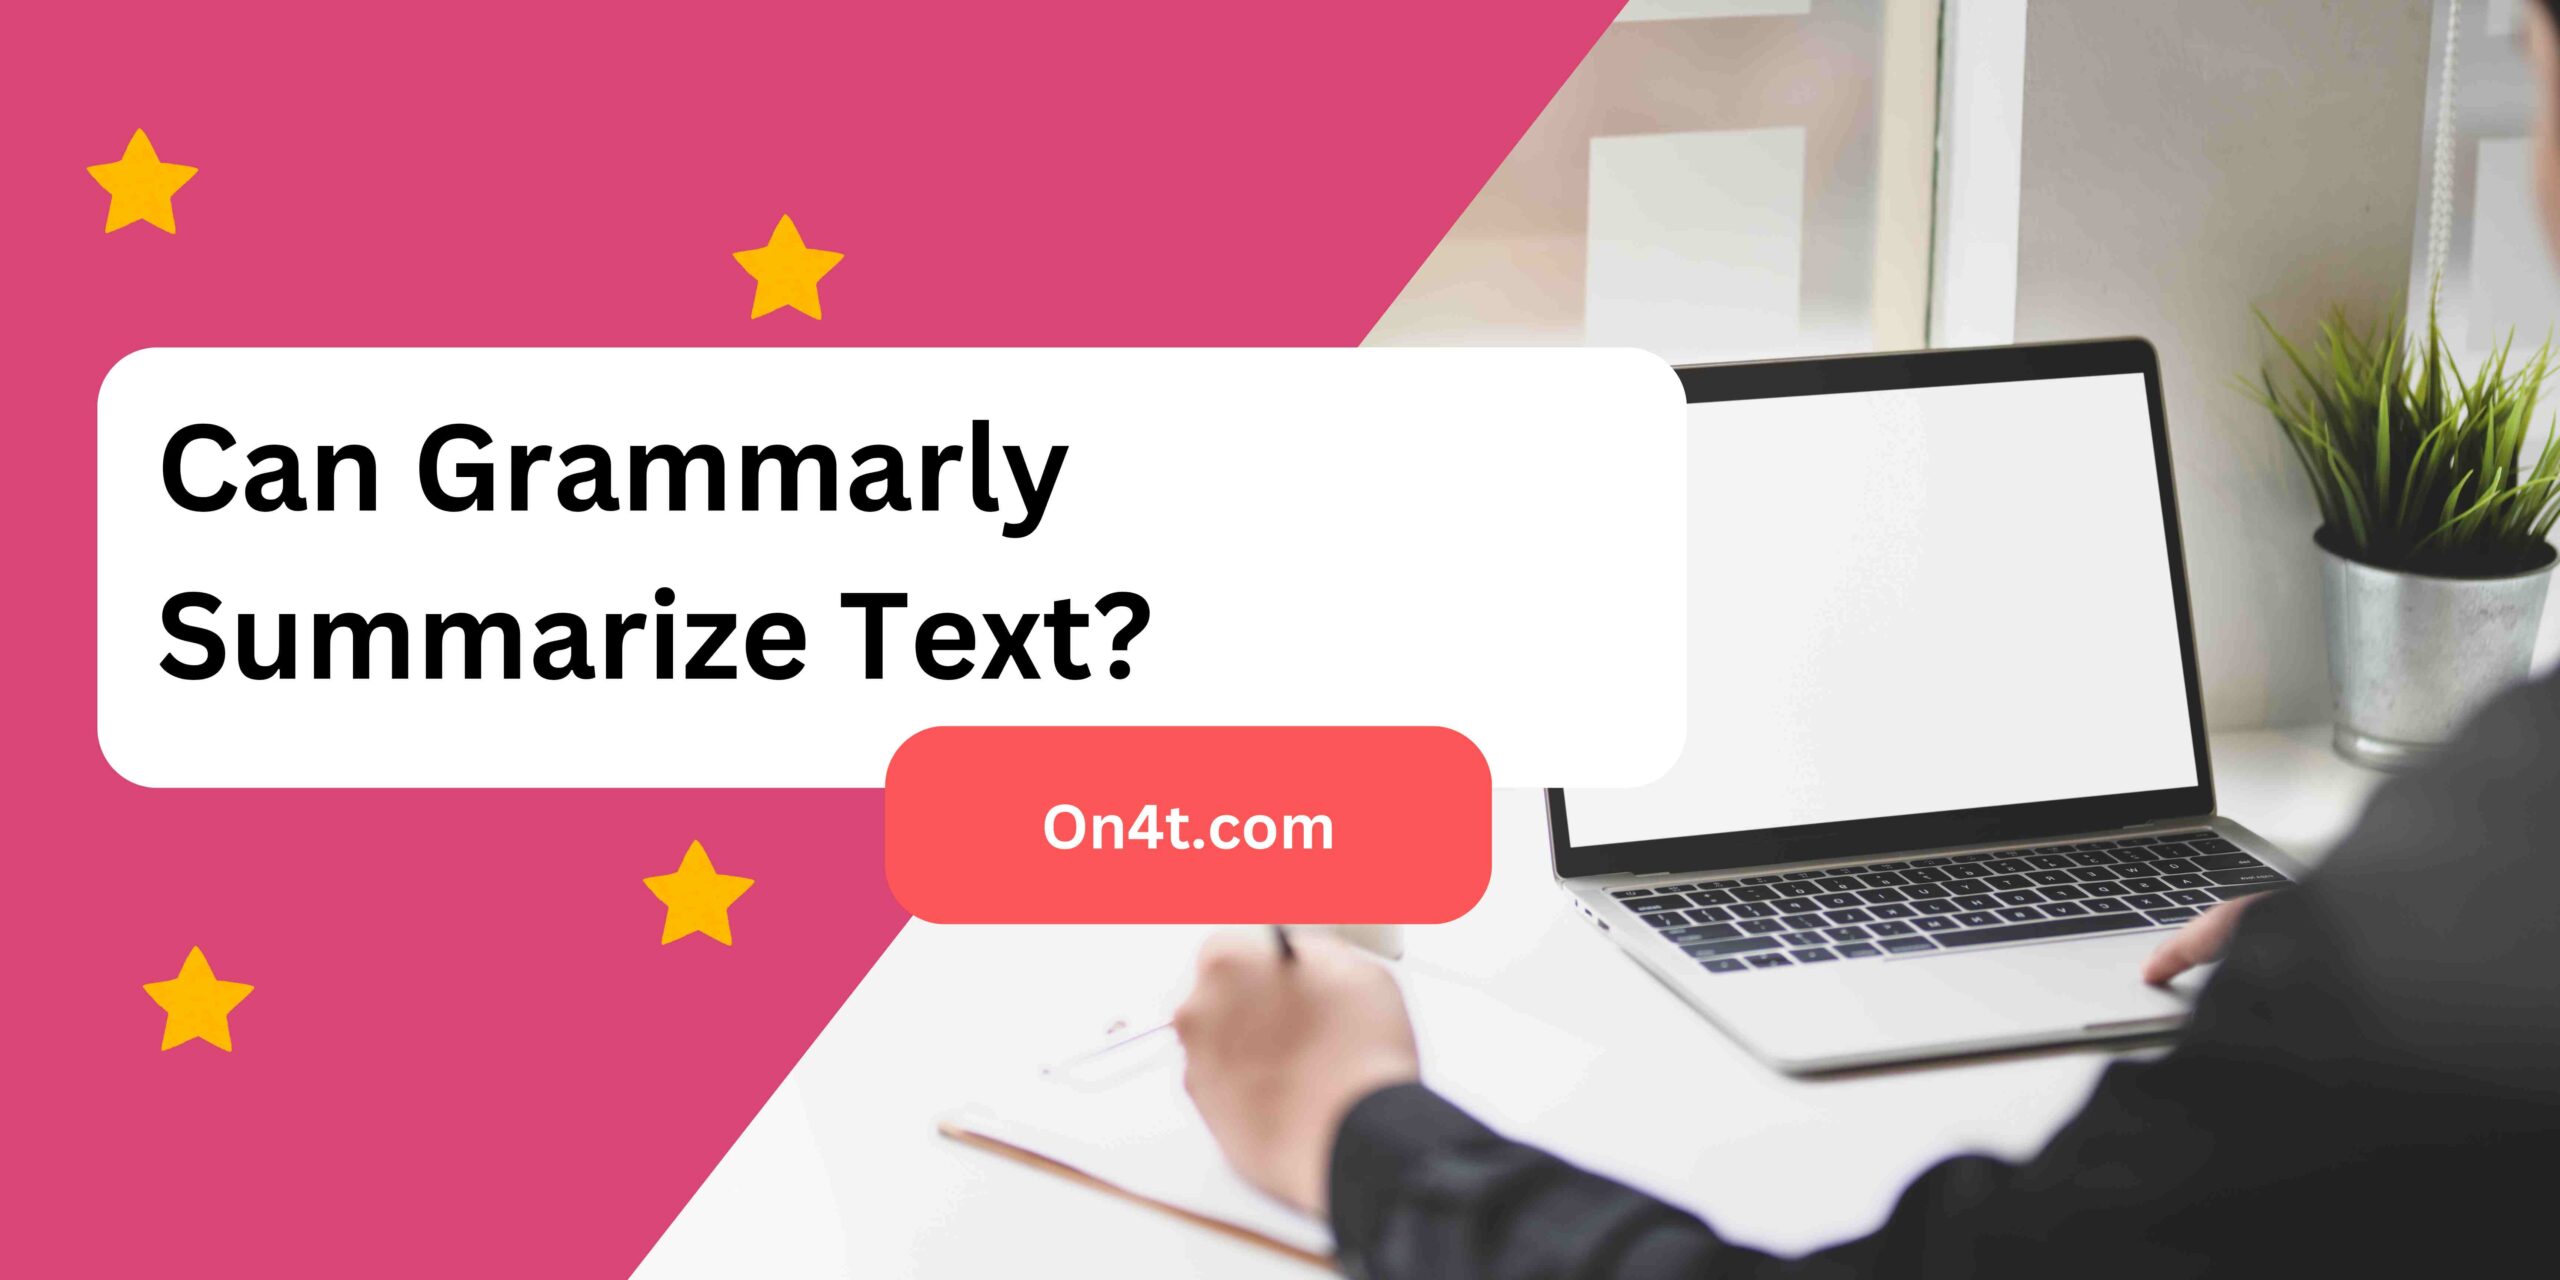 Can Grammarly Summarize Text?